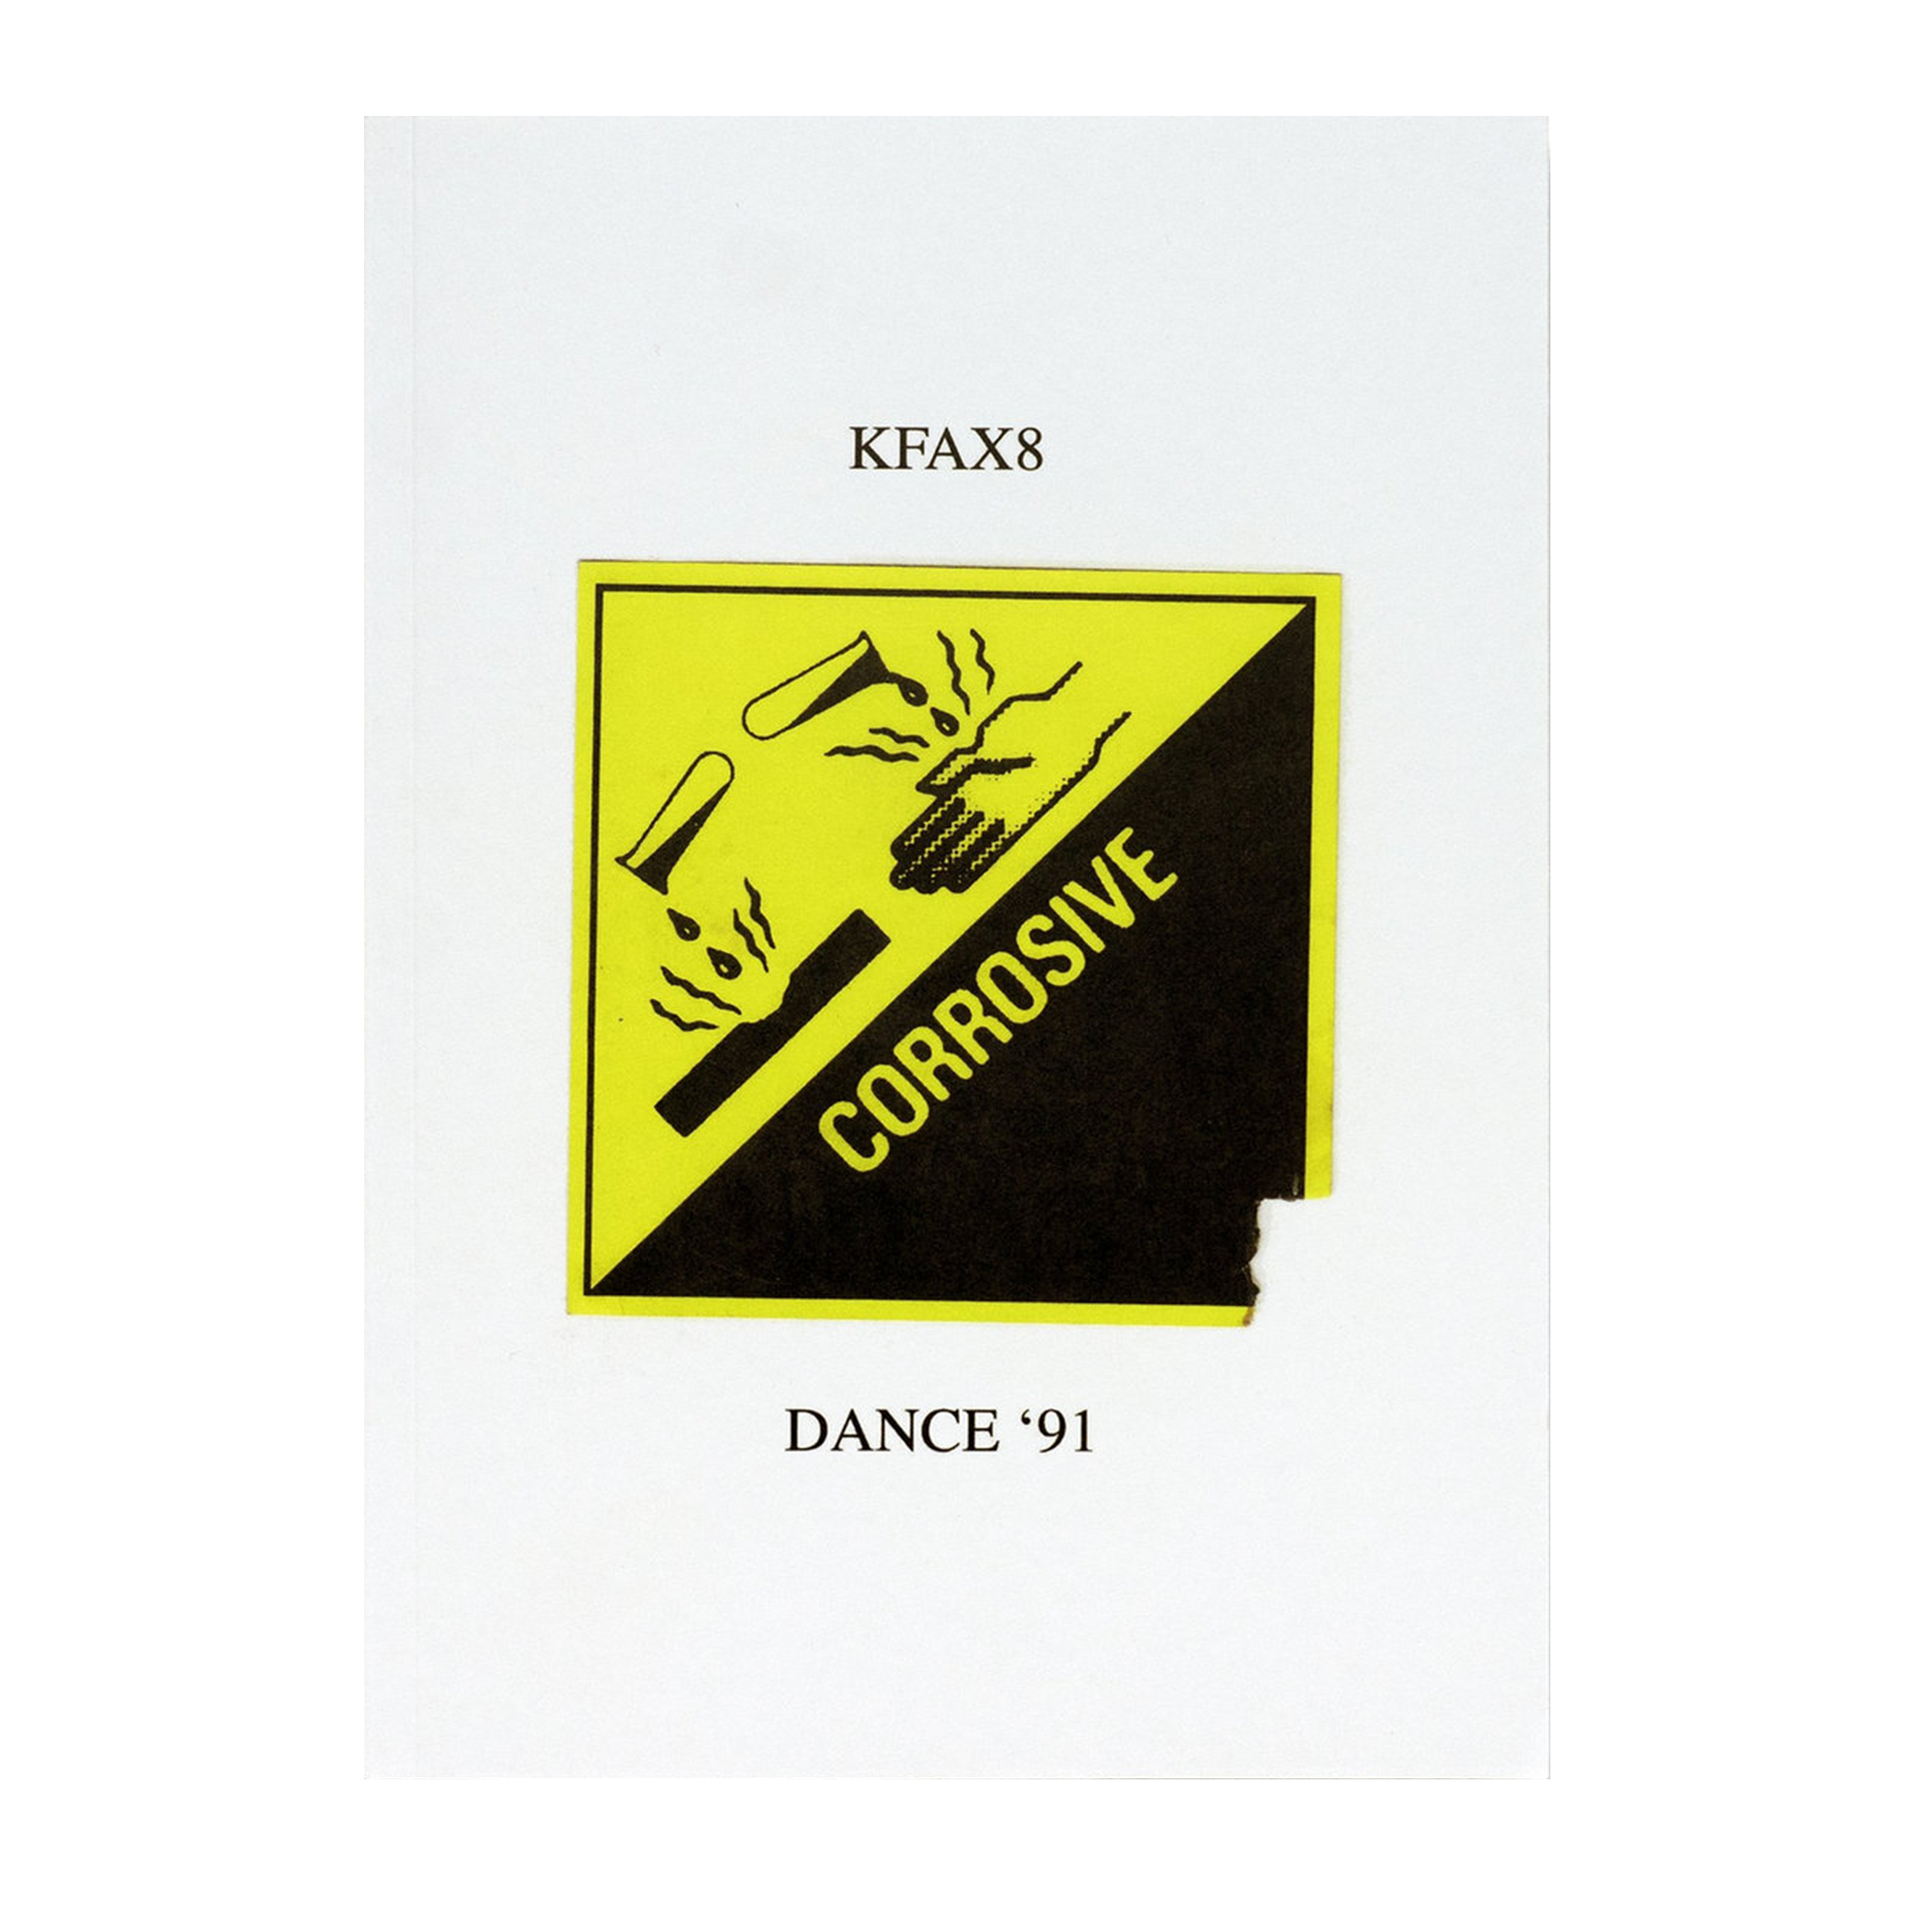 KFAX8 - Dance '91